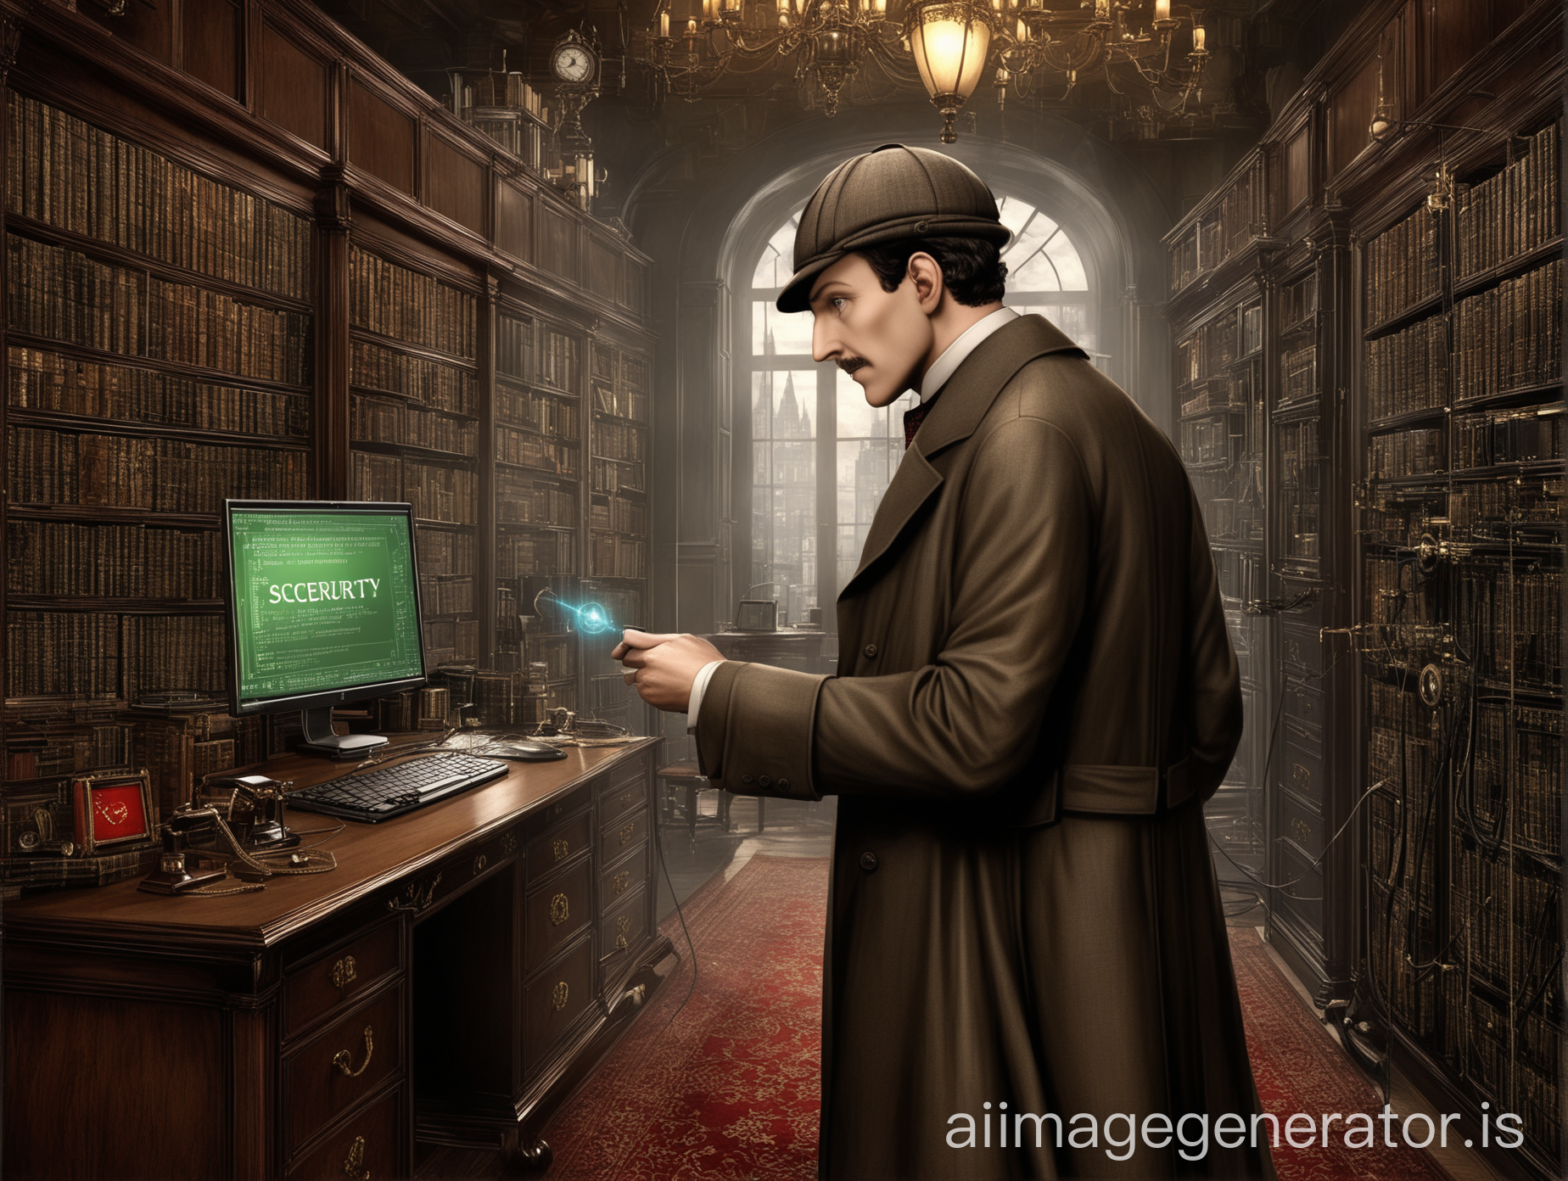 Facet w brązowym płaszczu i kapeluszu stylizowany na Sherlocka Holmsa stojący w bibliotece